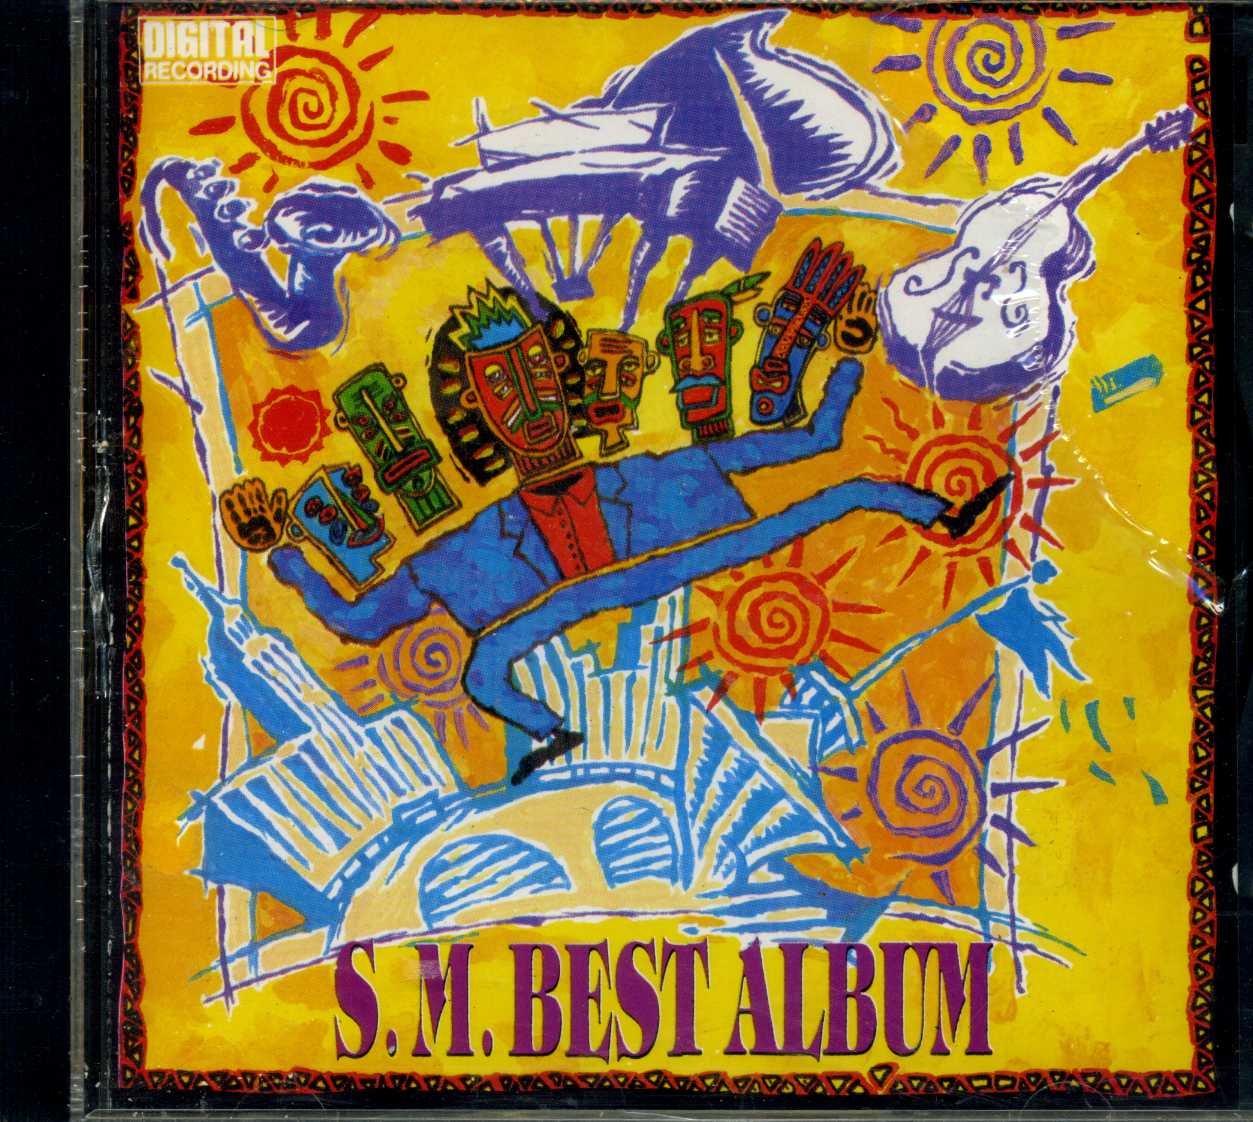 SM Best Album